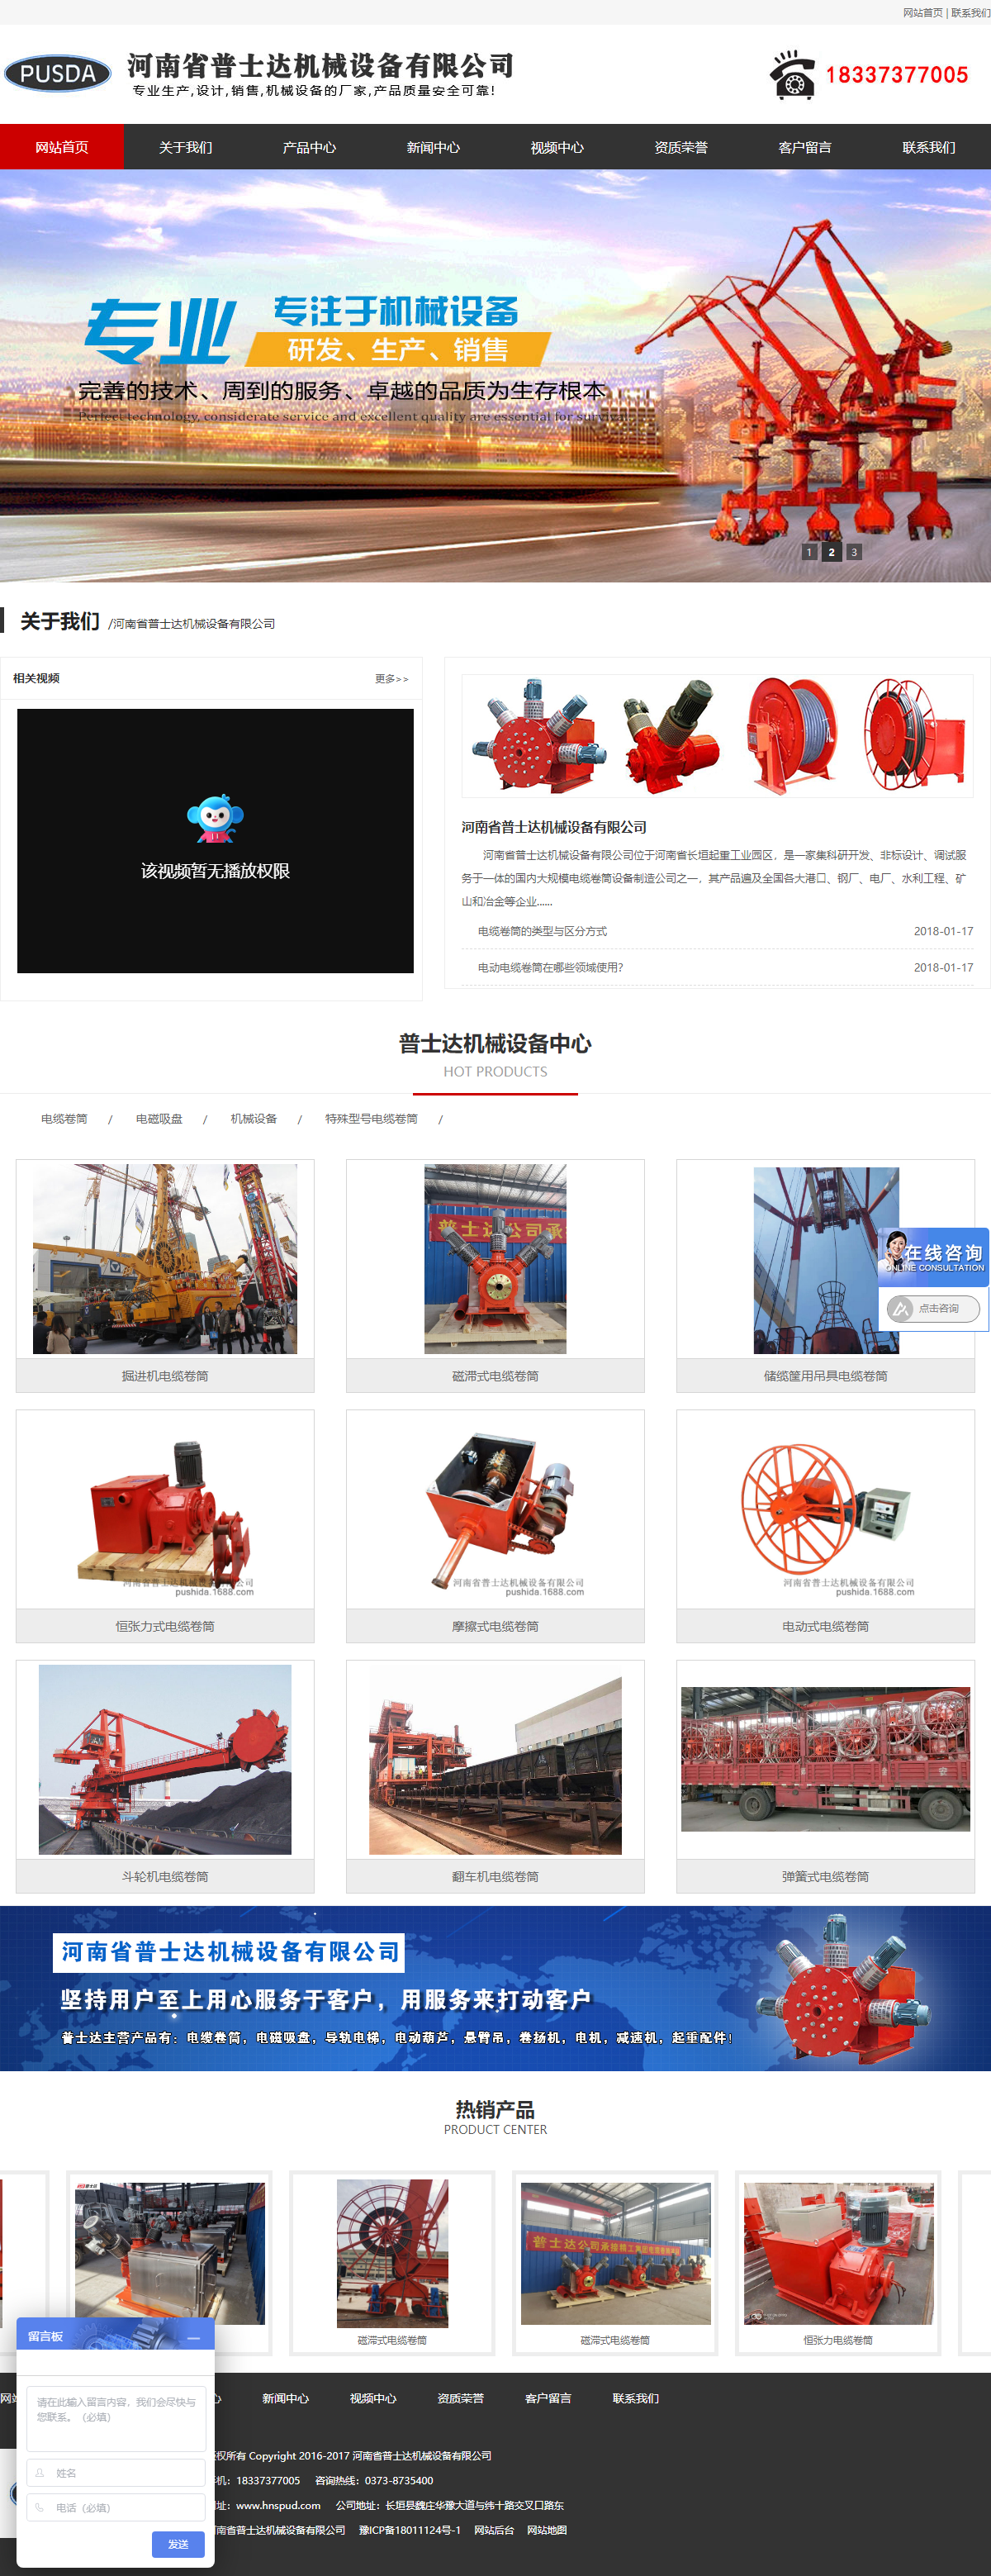 河南省普士达机械设备有限公司网站案例